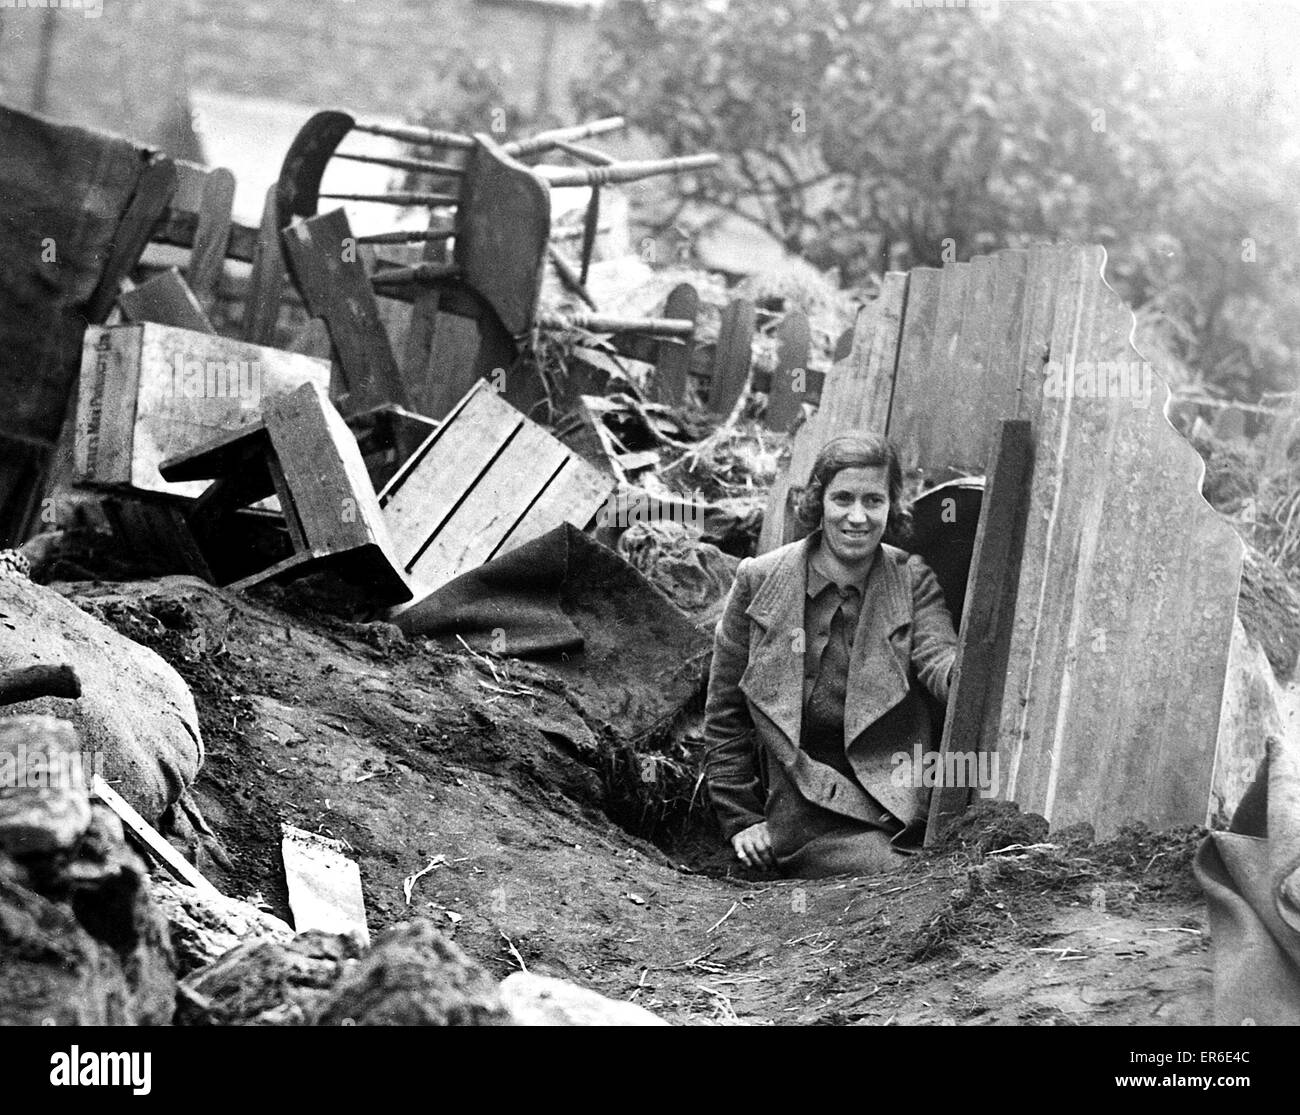 Una señorita Anderson emerge de un refugio después de un ataque aéreo y una gran noche de bombardeos. Circa: 1940 Foto de stock